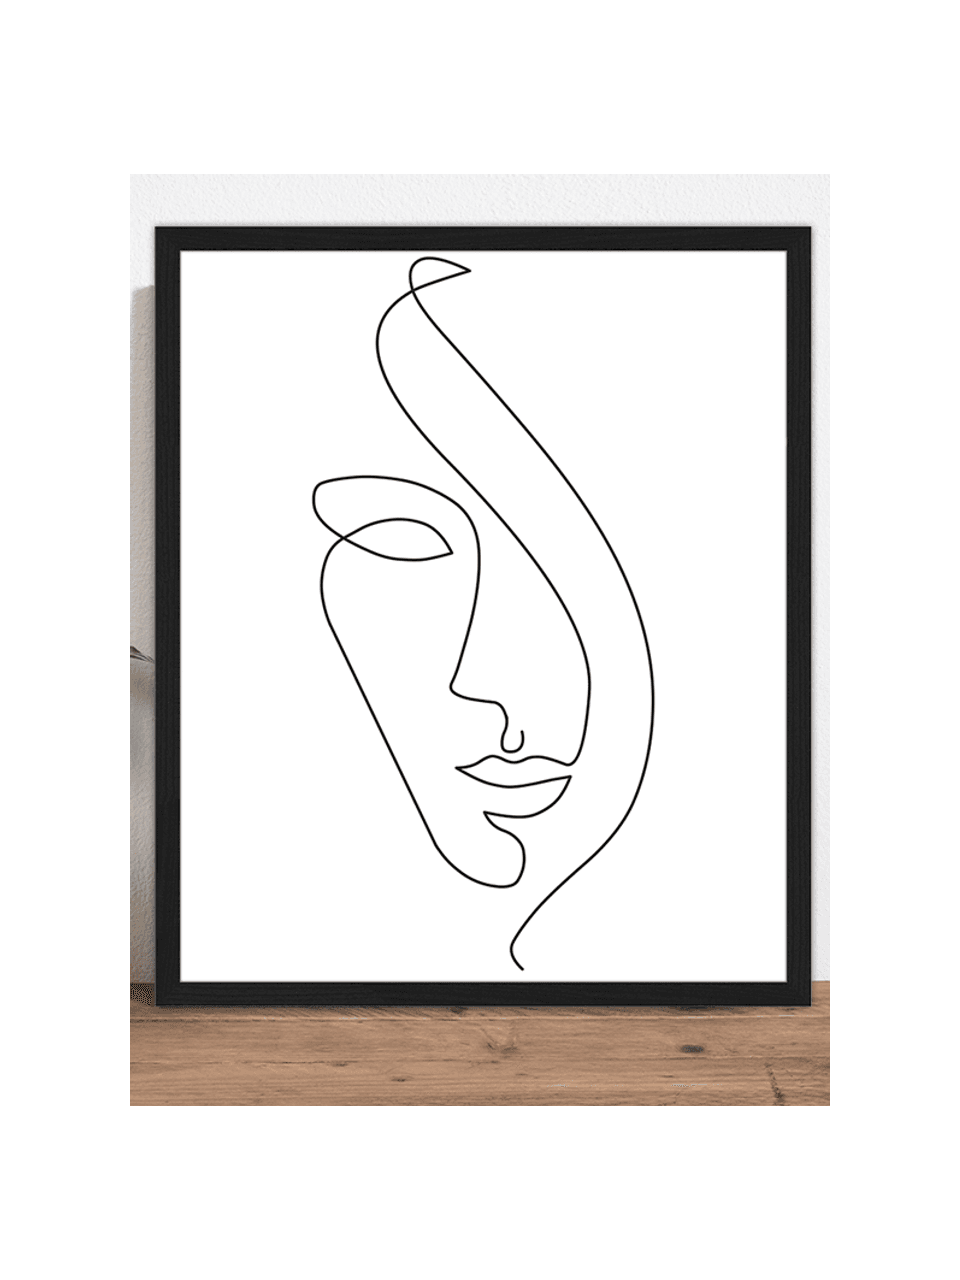 Gerahmter Digitaldruck Abstract Face II, Rahmen: Buchenholz, lackiert, Front: Plexiglas, Bild: Digitaldruck auf Papier, , Schwarz, Weiß, B 53 x H 63 cm